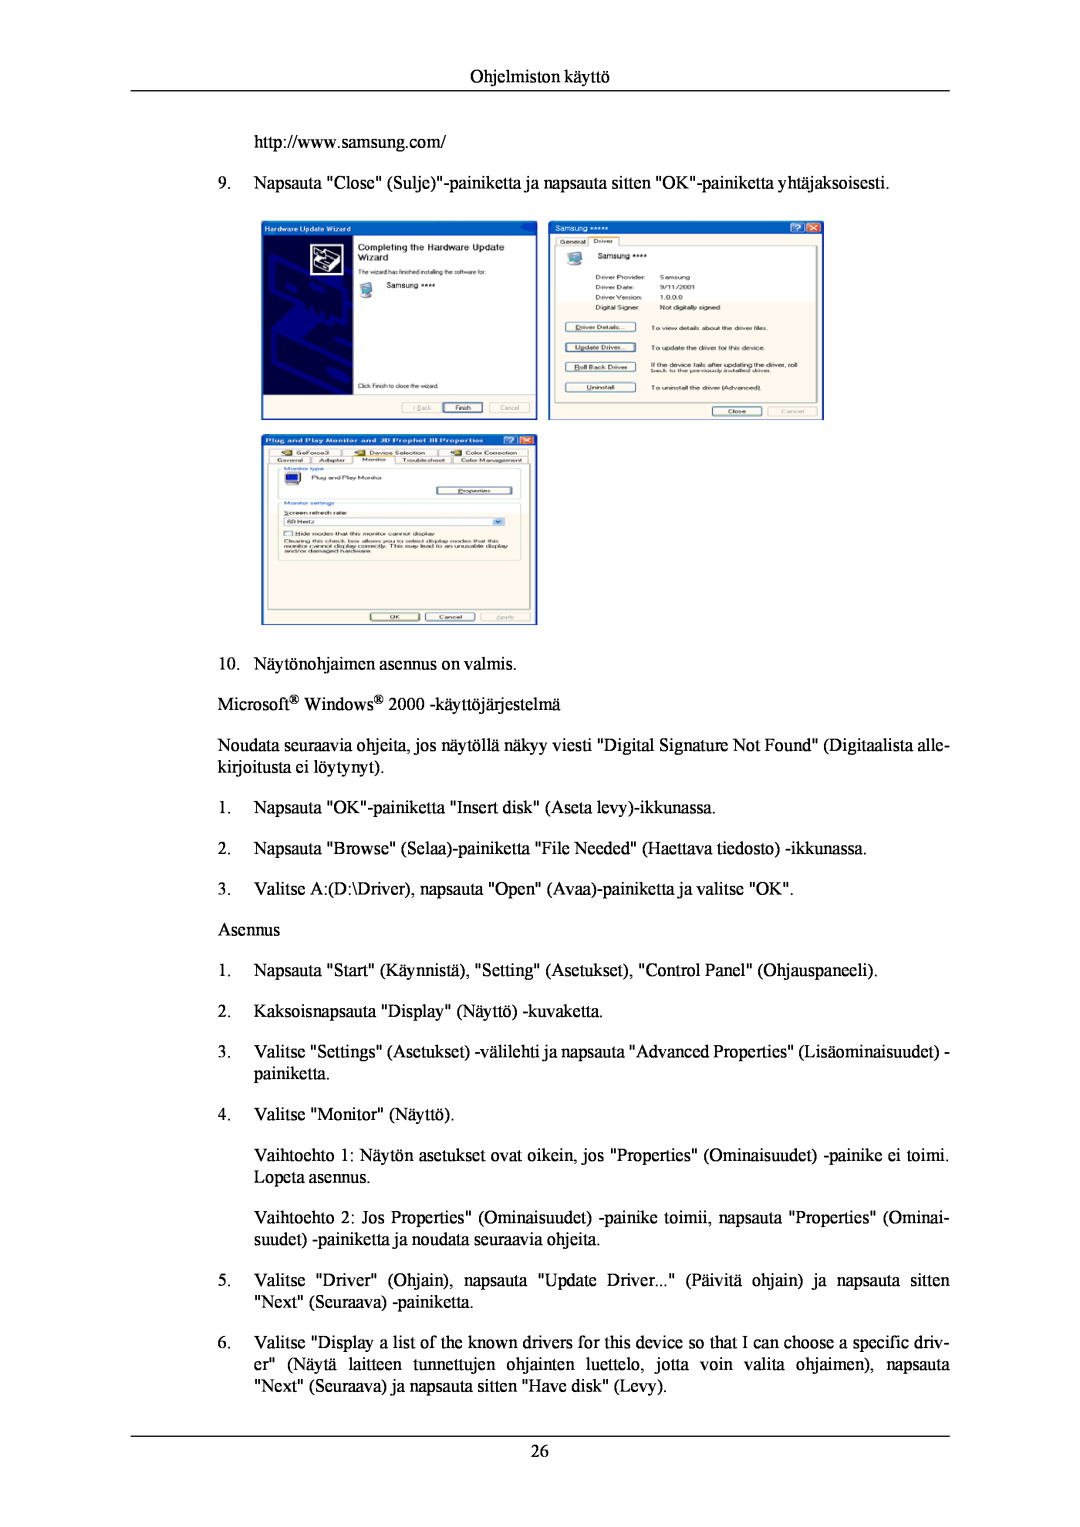 Samsung LS26KIEEFV/EDC manual Ohjelmiston käyttö, Napsauta OK-painiketta Insert disk Aseta levy-ikkunassa, Asennus 